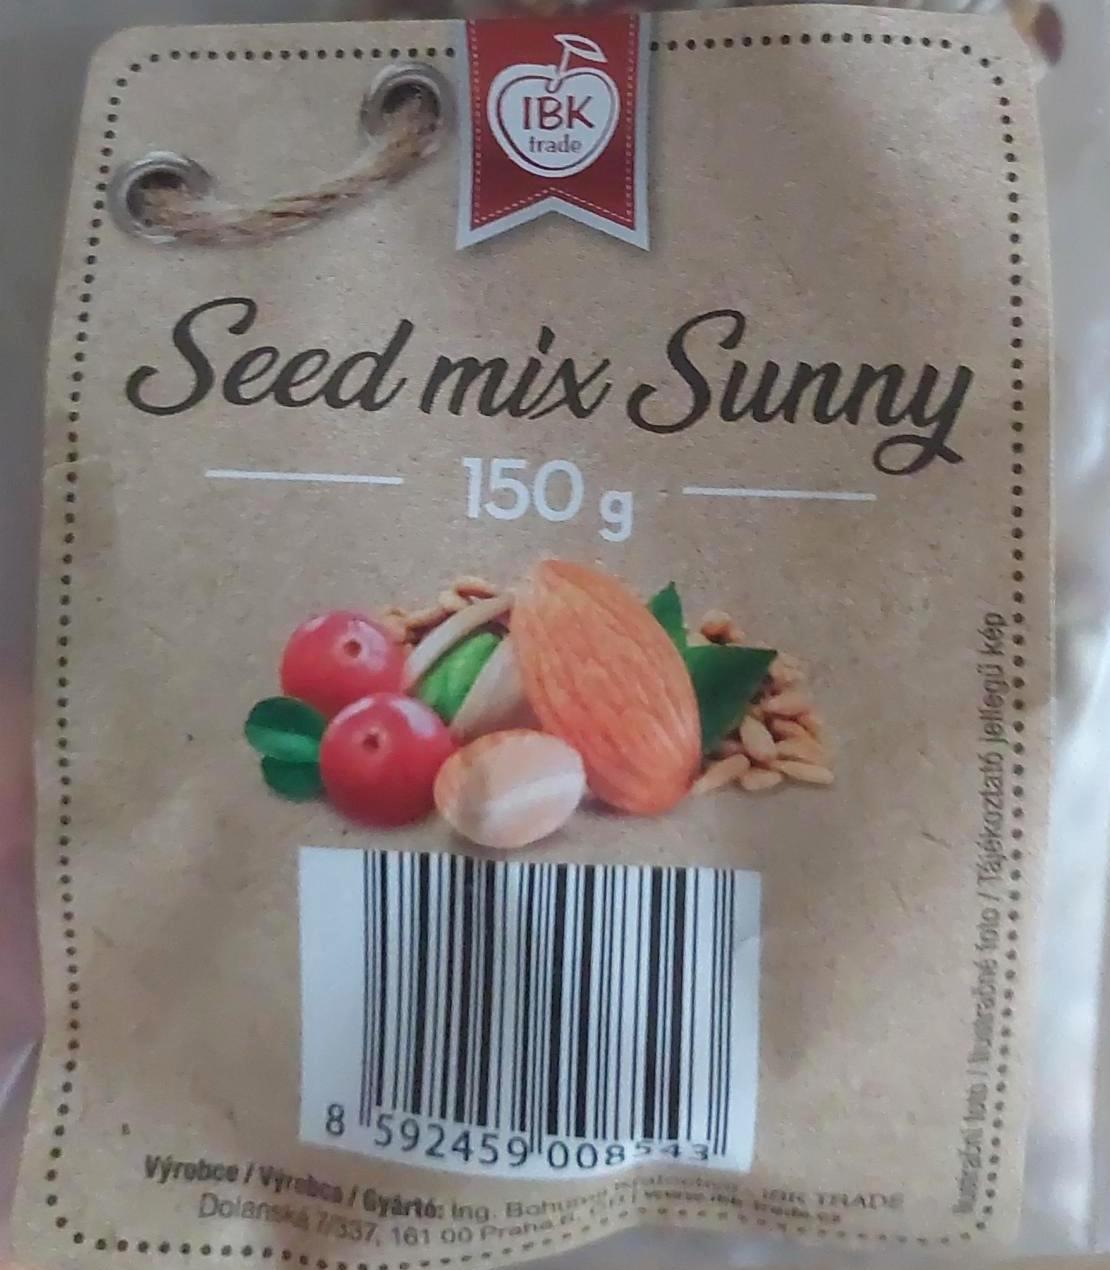 Képek - Seed mix sunny IBK